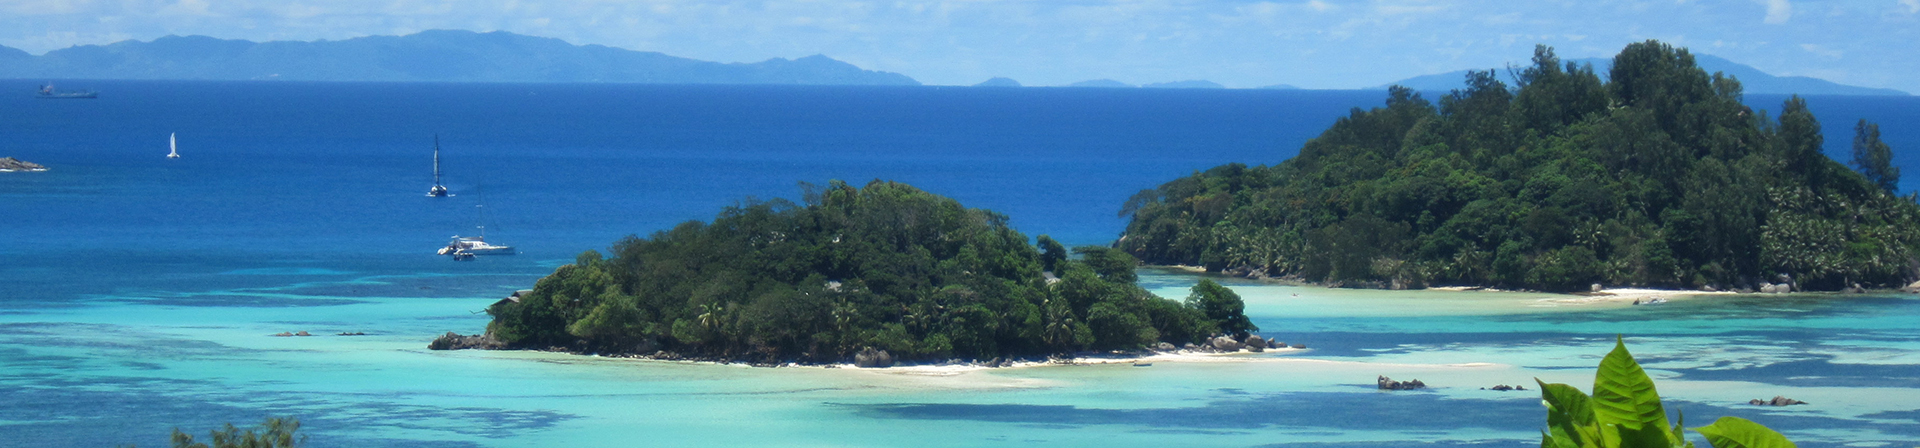 Lavigne Reisen: Seychellen im Indischen Ozean